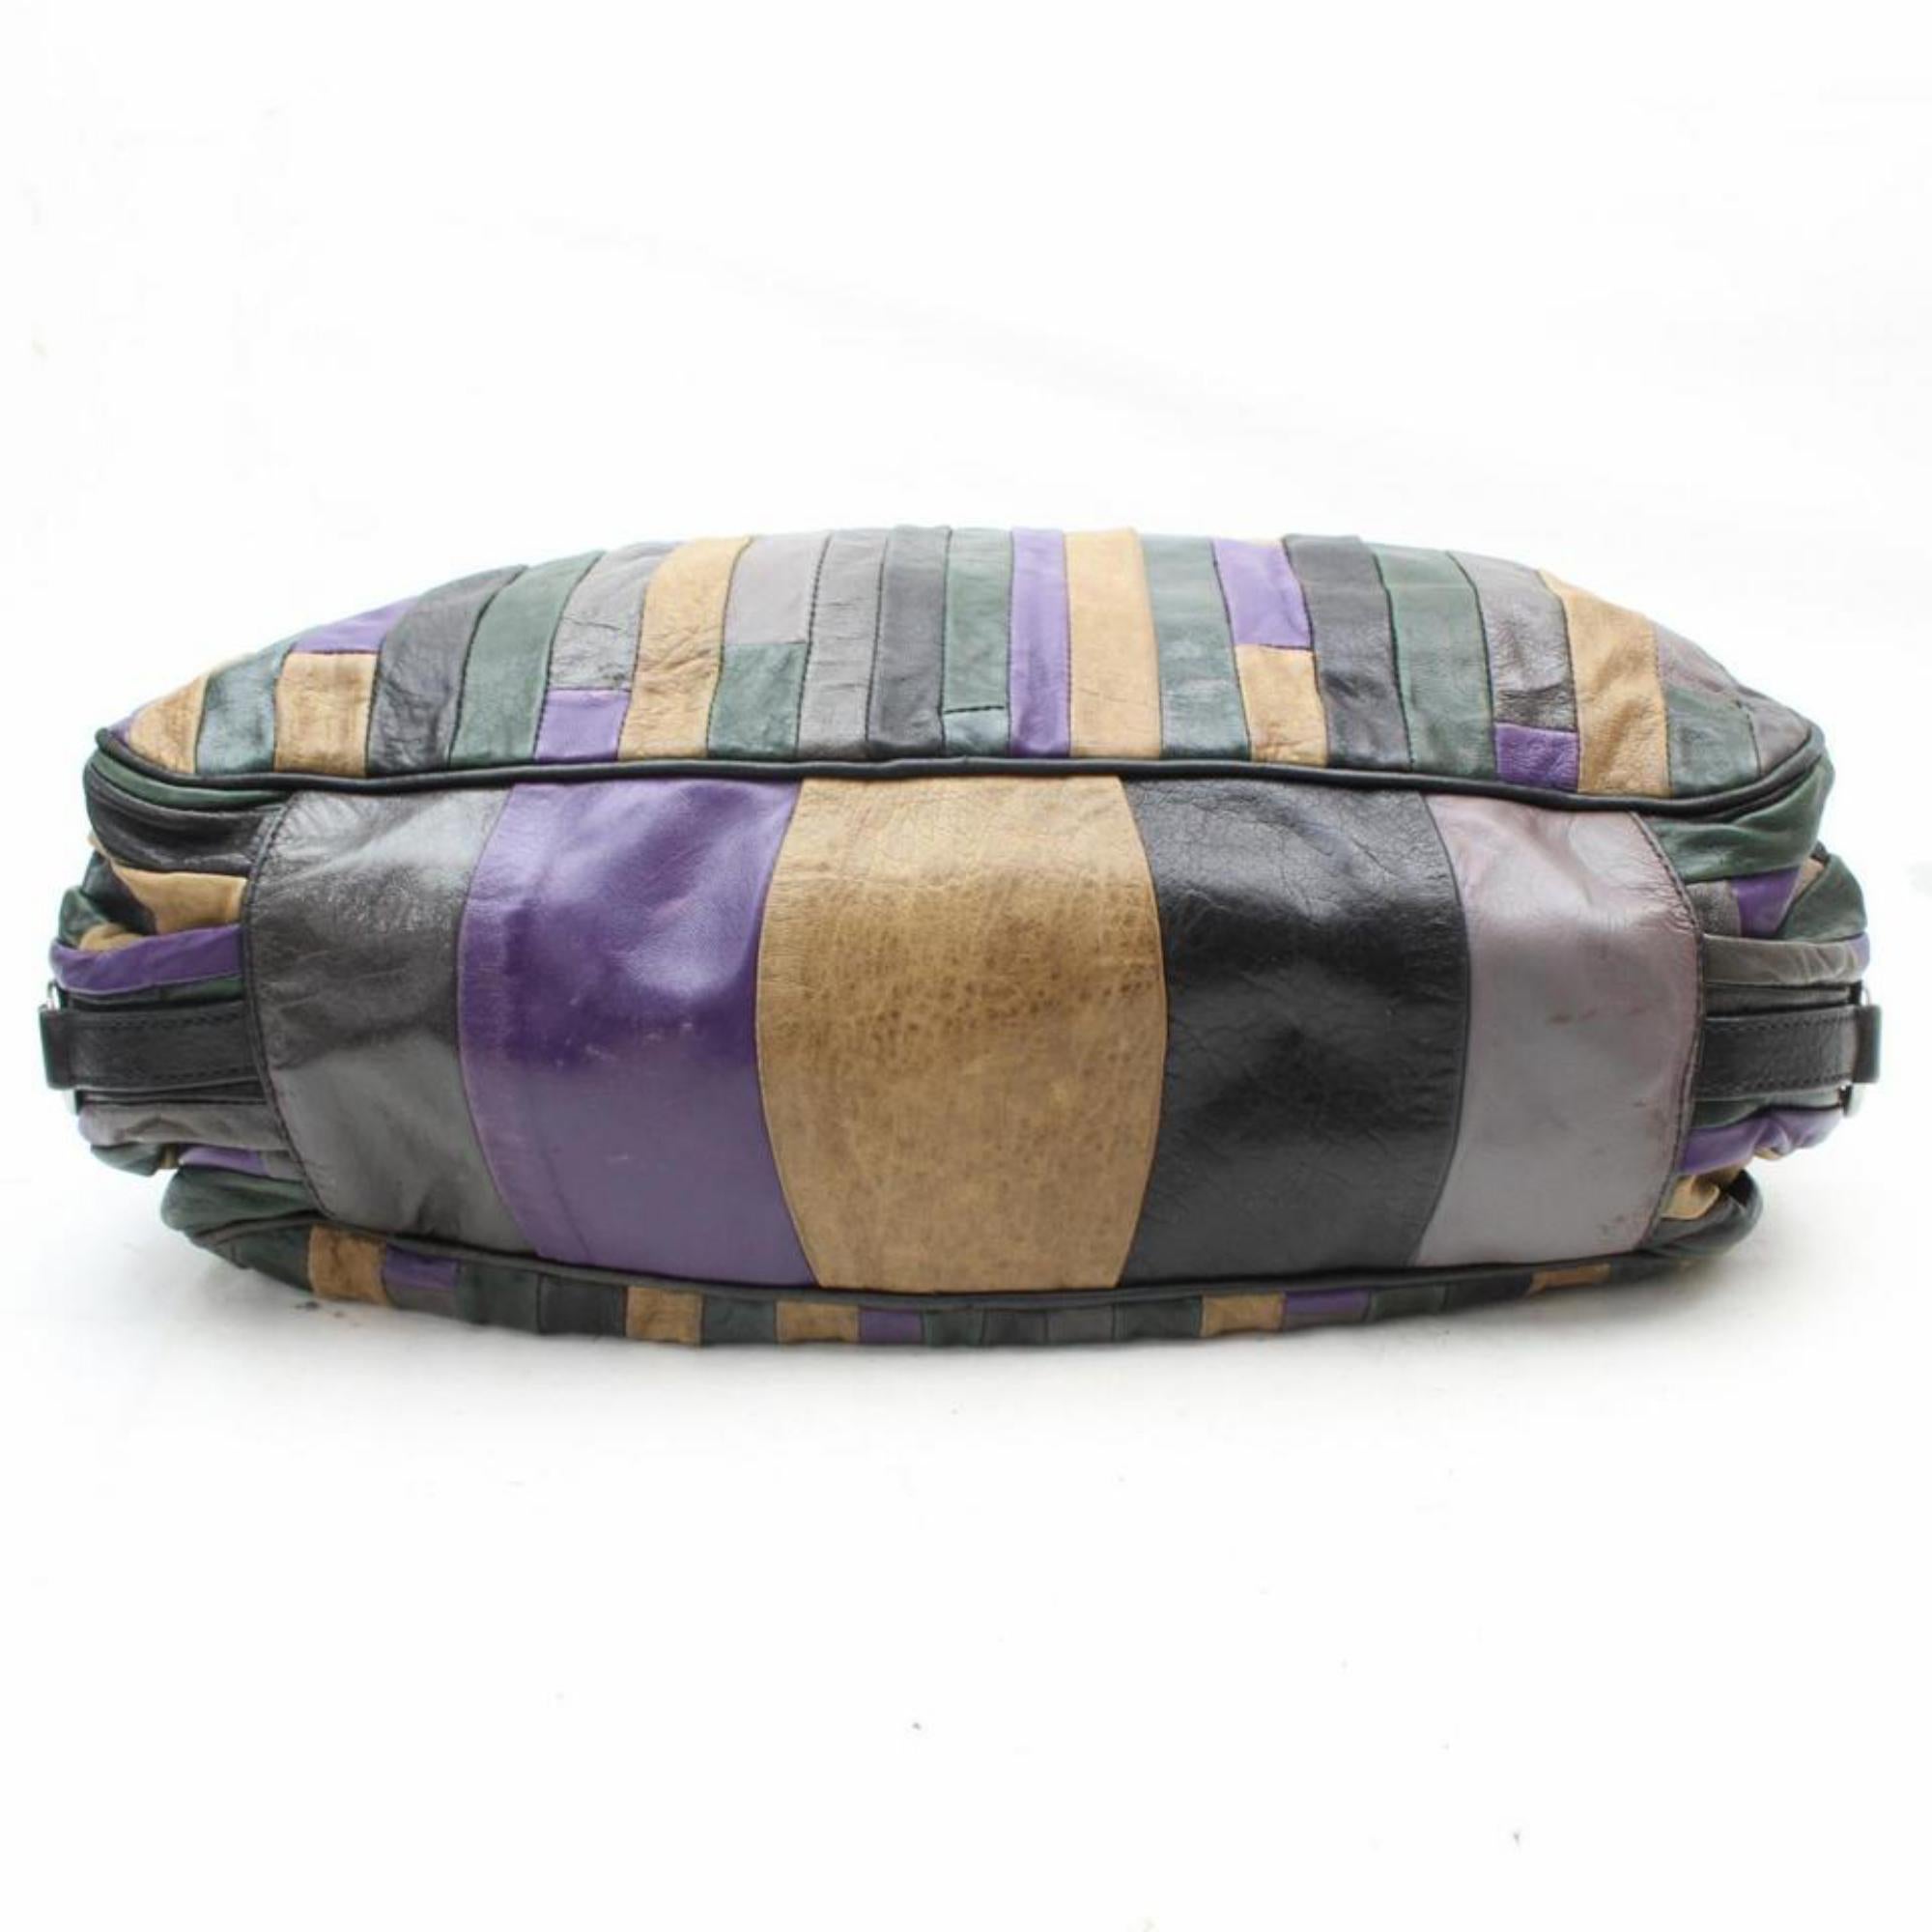 Miu Miu Patchwork Hobo 869478 Multi Color Leather Shoulder Bag For Sale 6